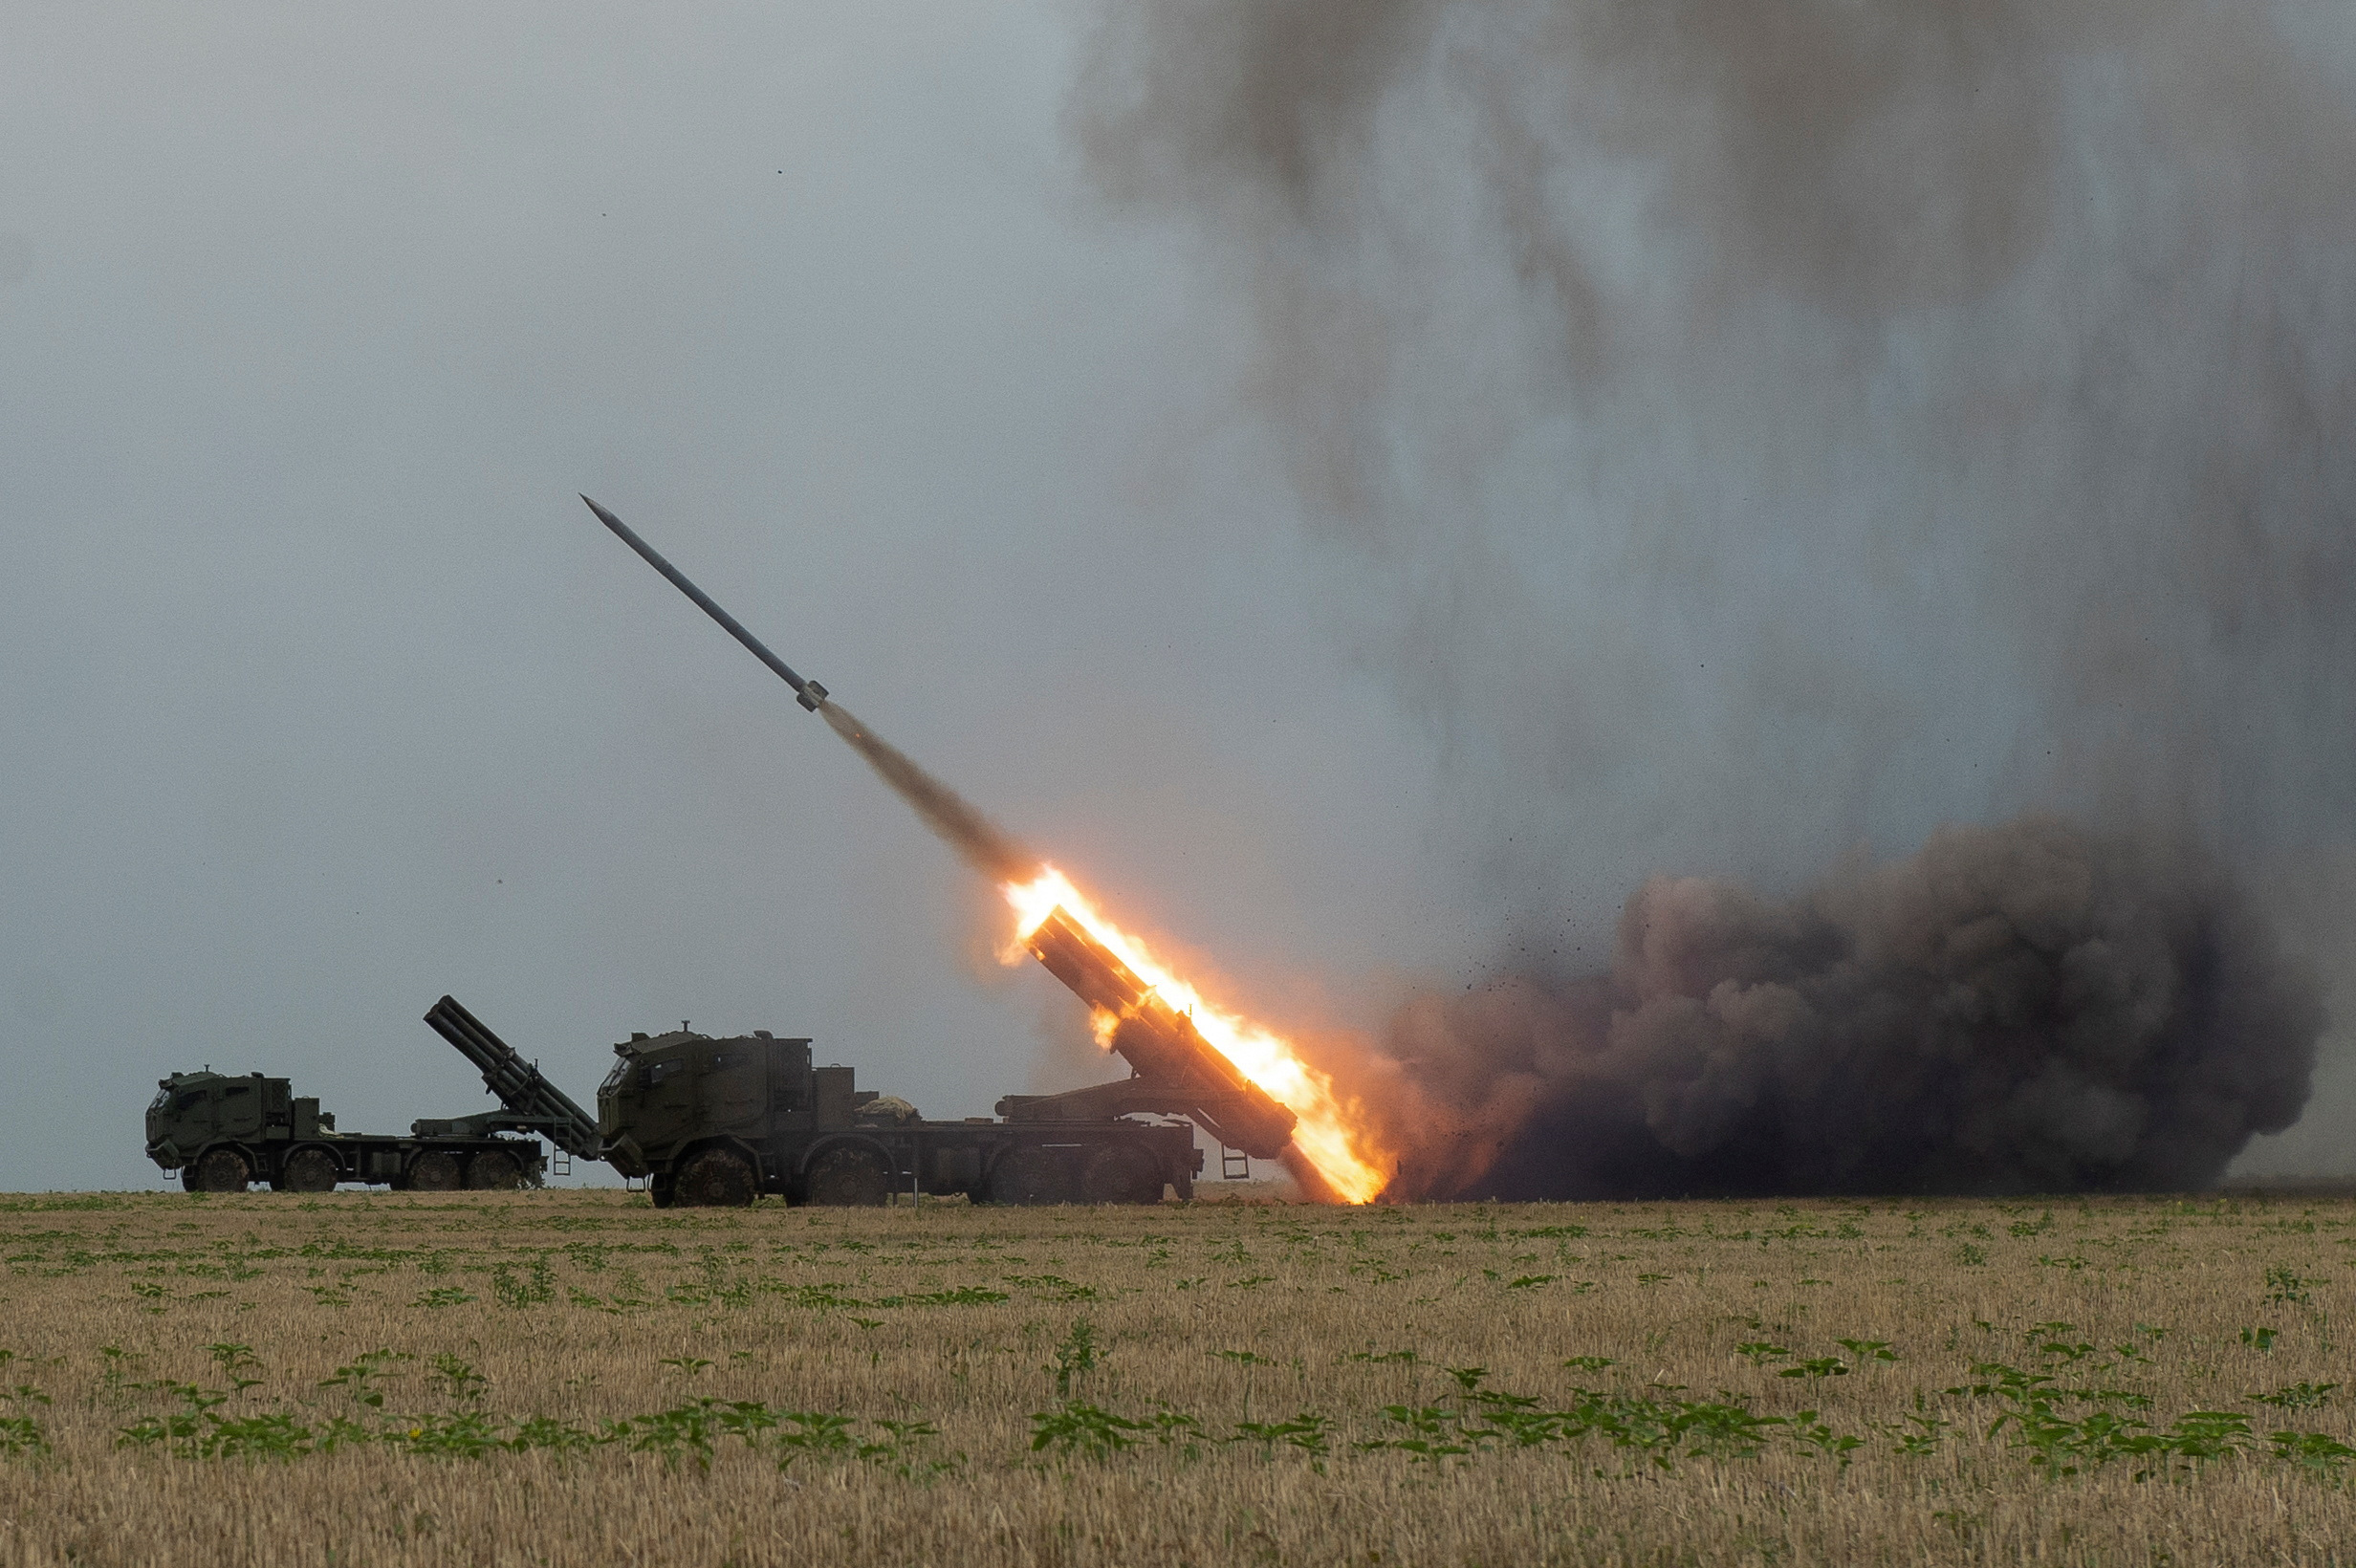 Las fuerzas ucranianas disparan misiles con el sistema Bureviy de lanzamientos múltiples en la región de Kharkiv, donde intentan reconquistar esa ciudad ocupada desde febrero por los rusos. REUTERS/Sofiia Gatilova